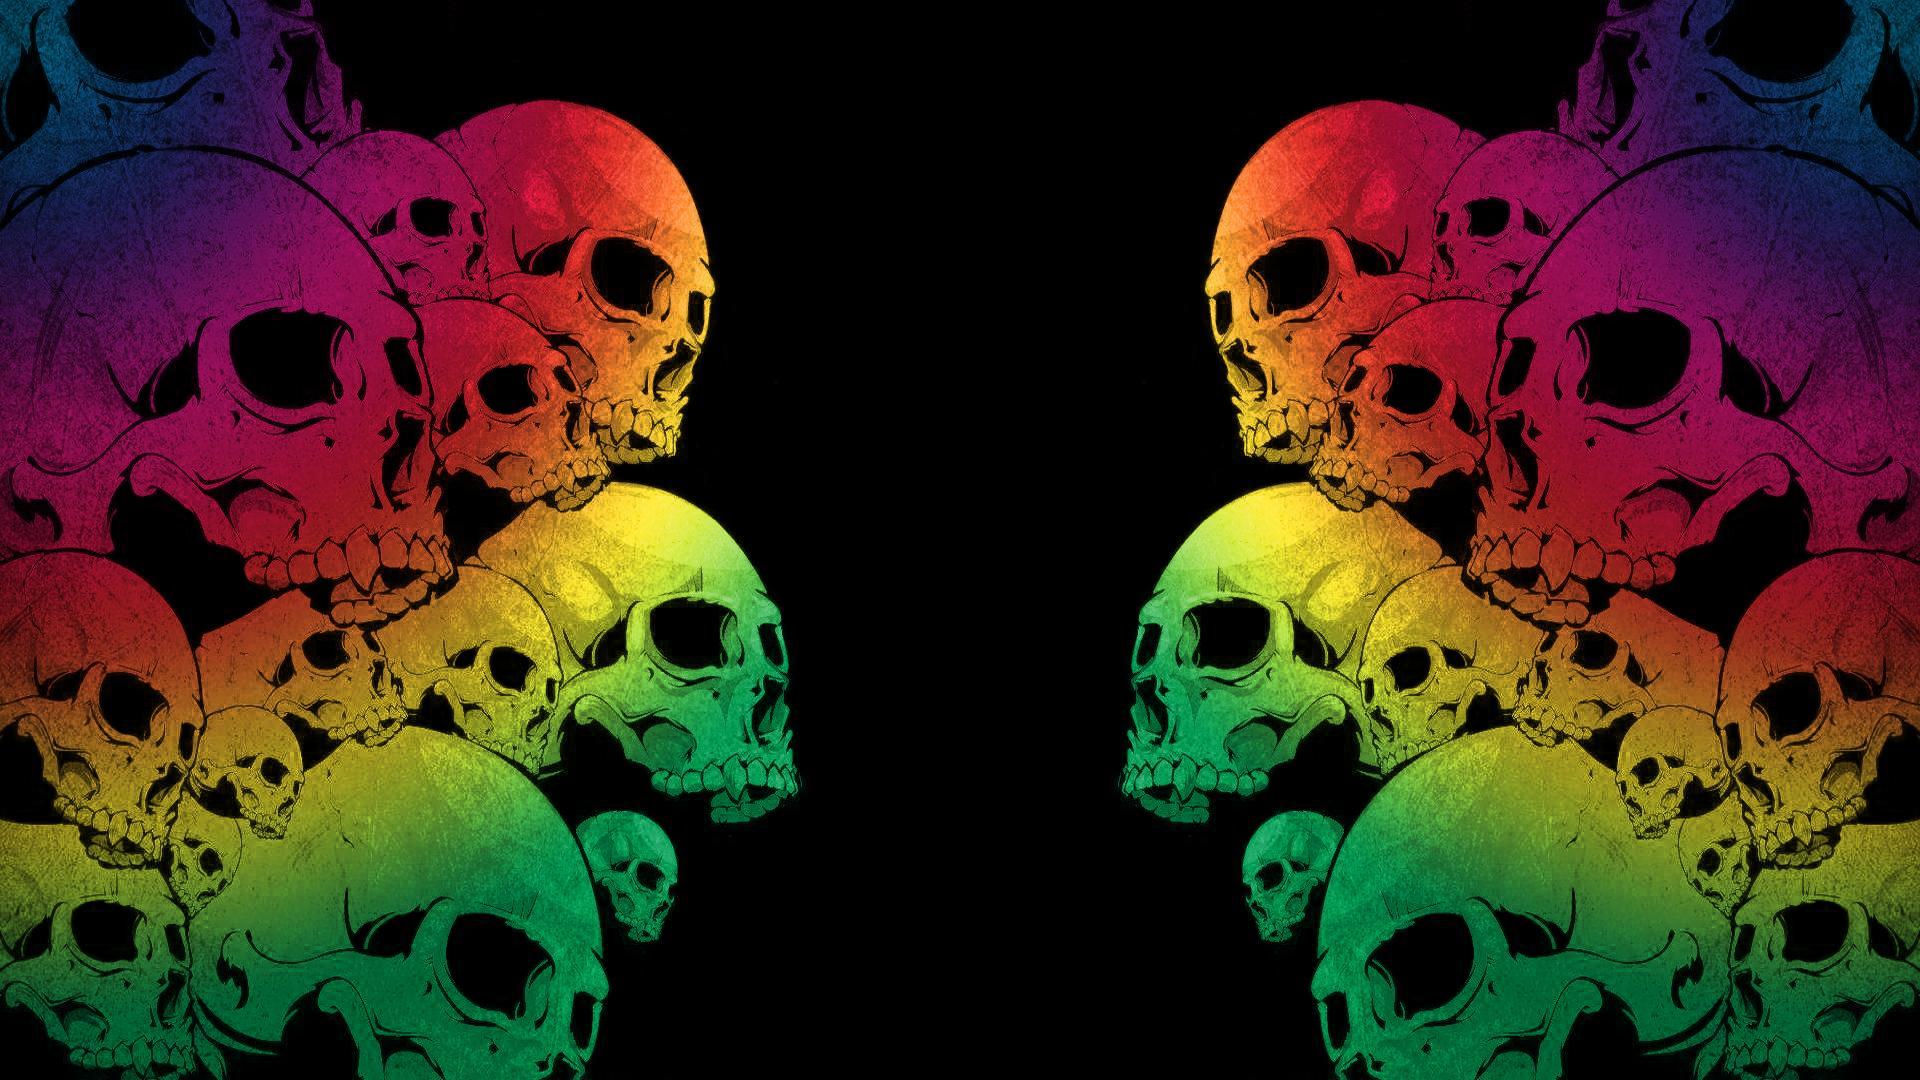 Free Galaxy Skull Wallpaper - Download in JPG | Template.net